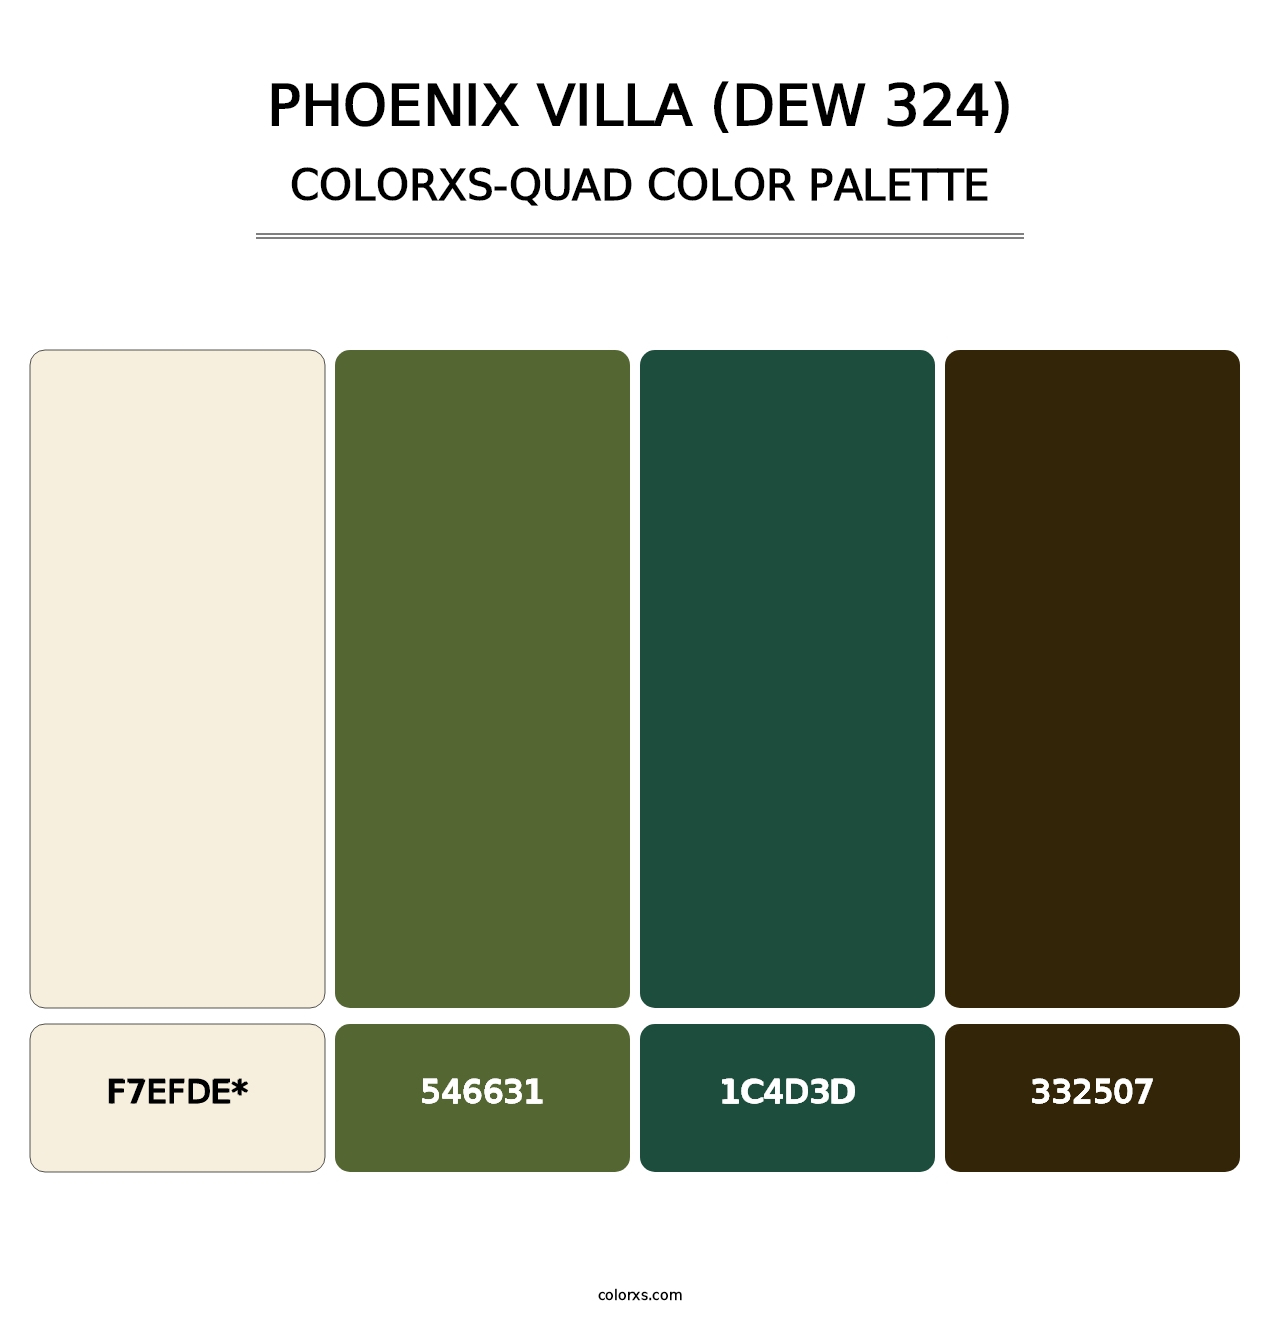 Phoenix Villa (DEW 324) - Colorxs Quad Palette